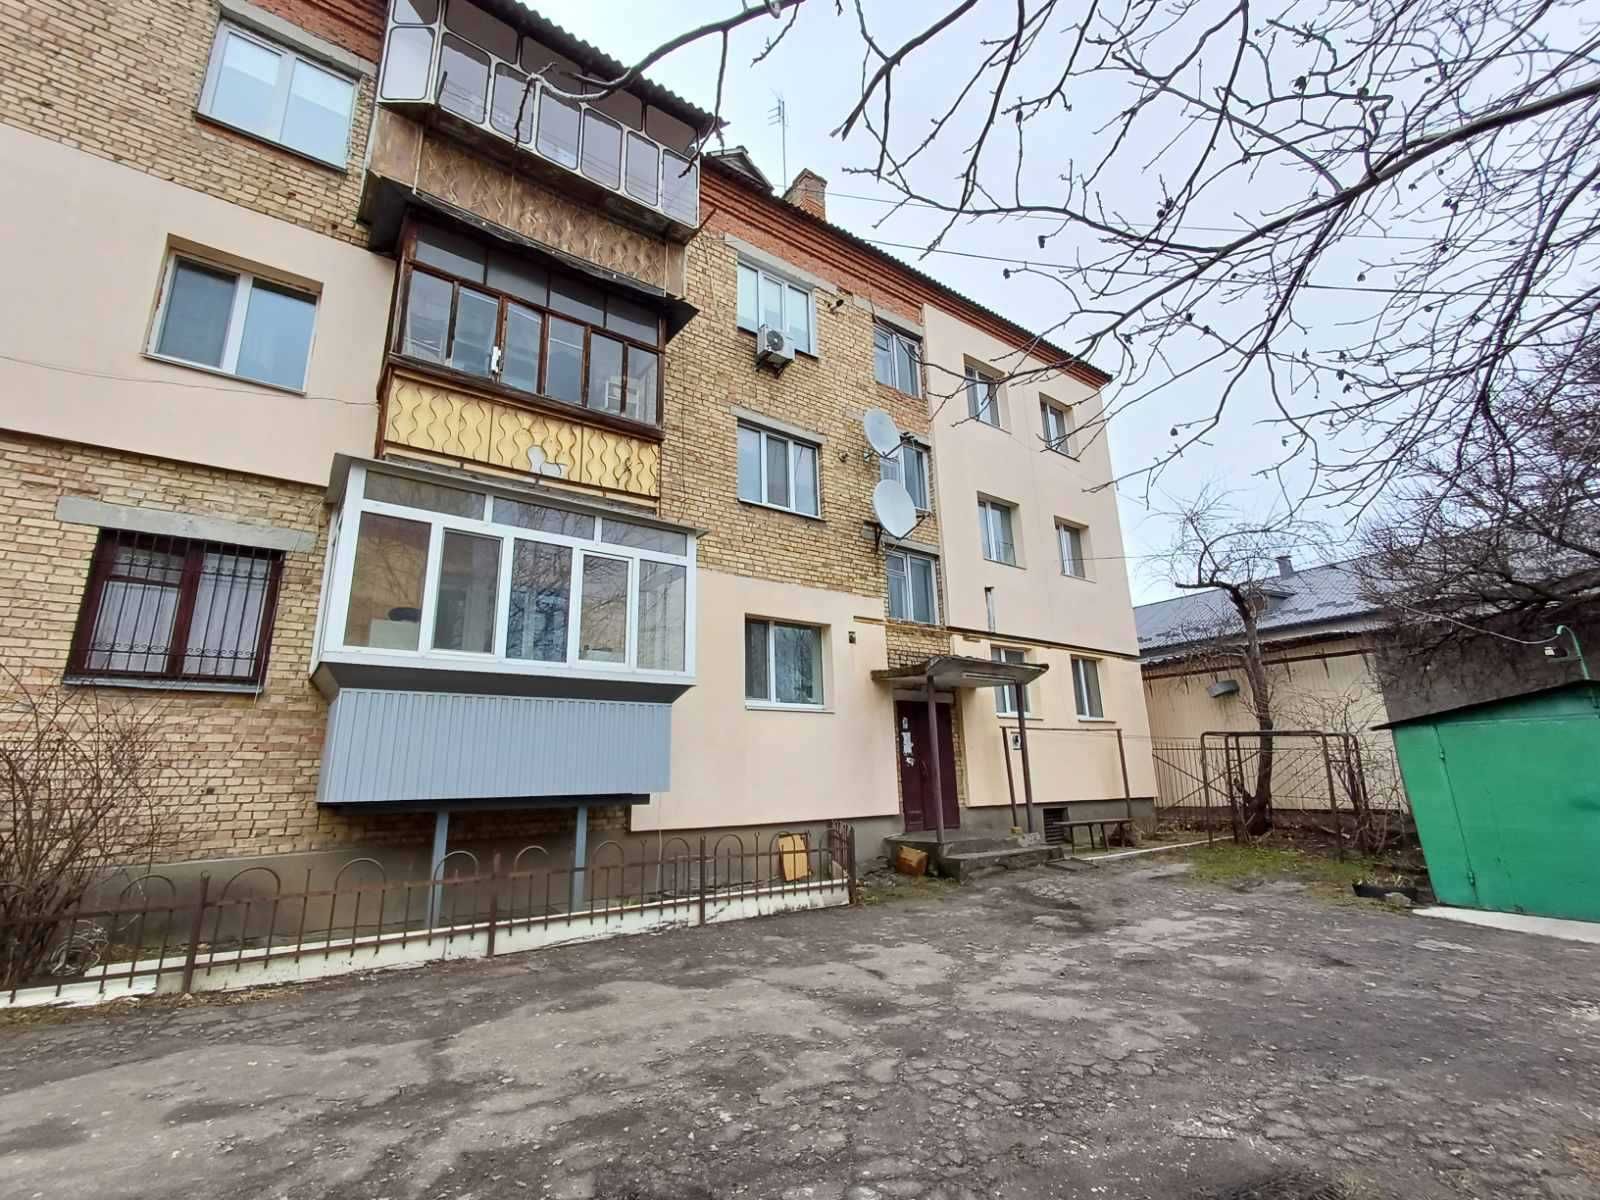 Продаж 1но кімнатної квартири в м. Васильків